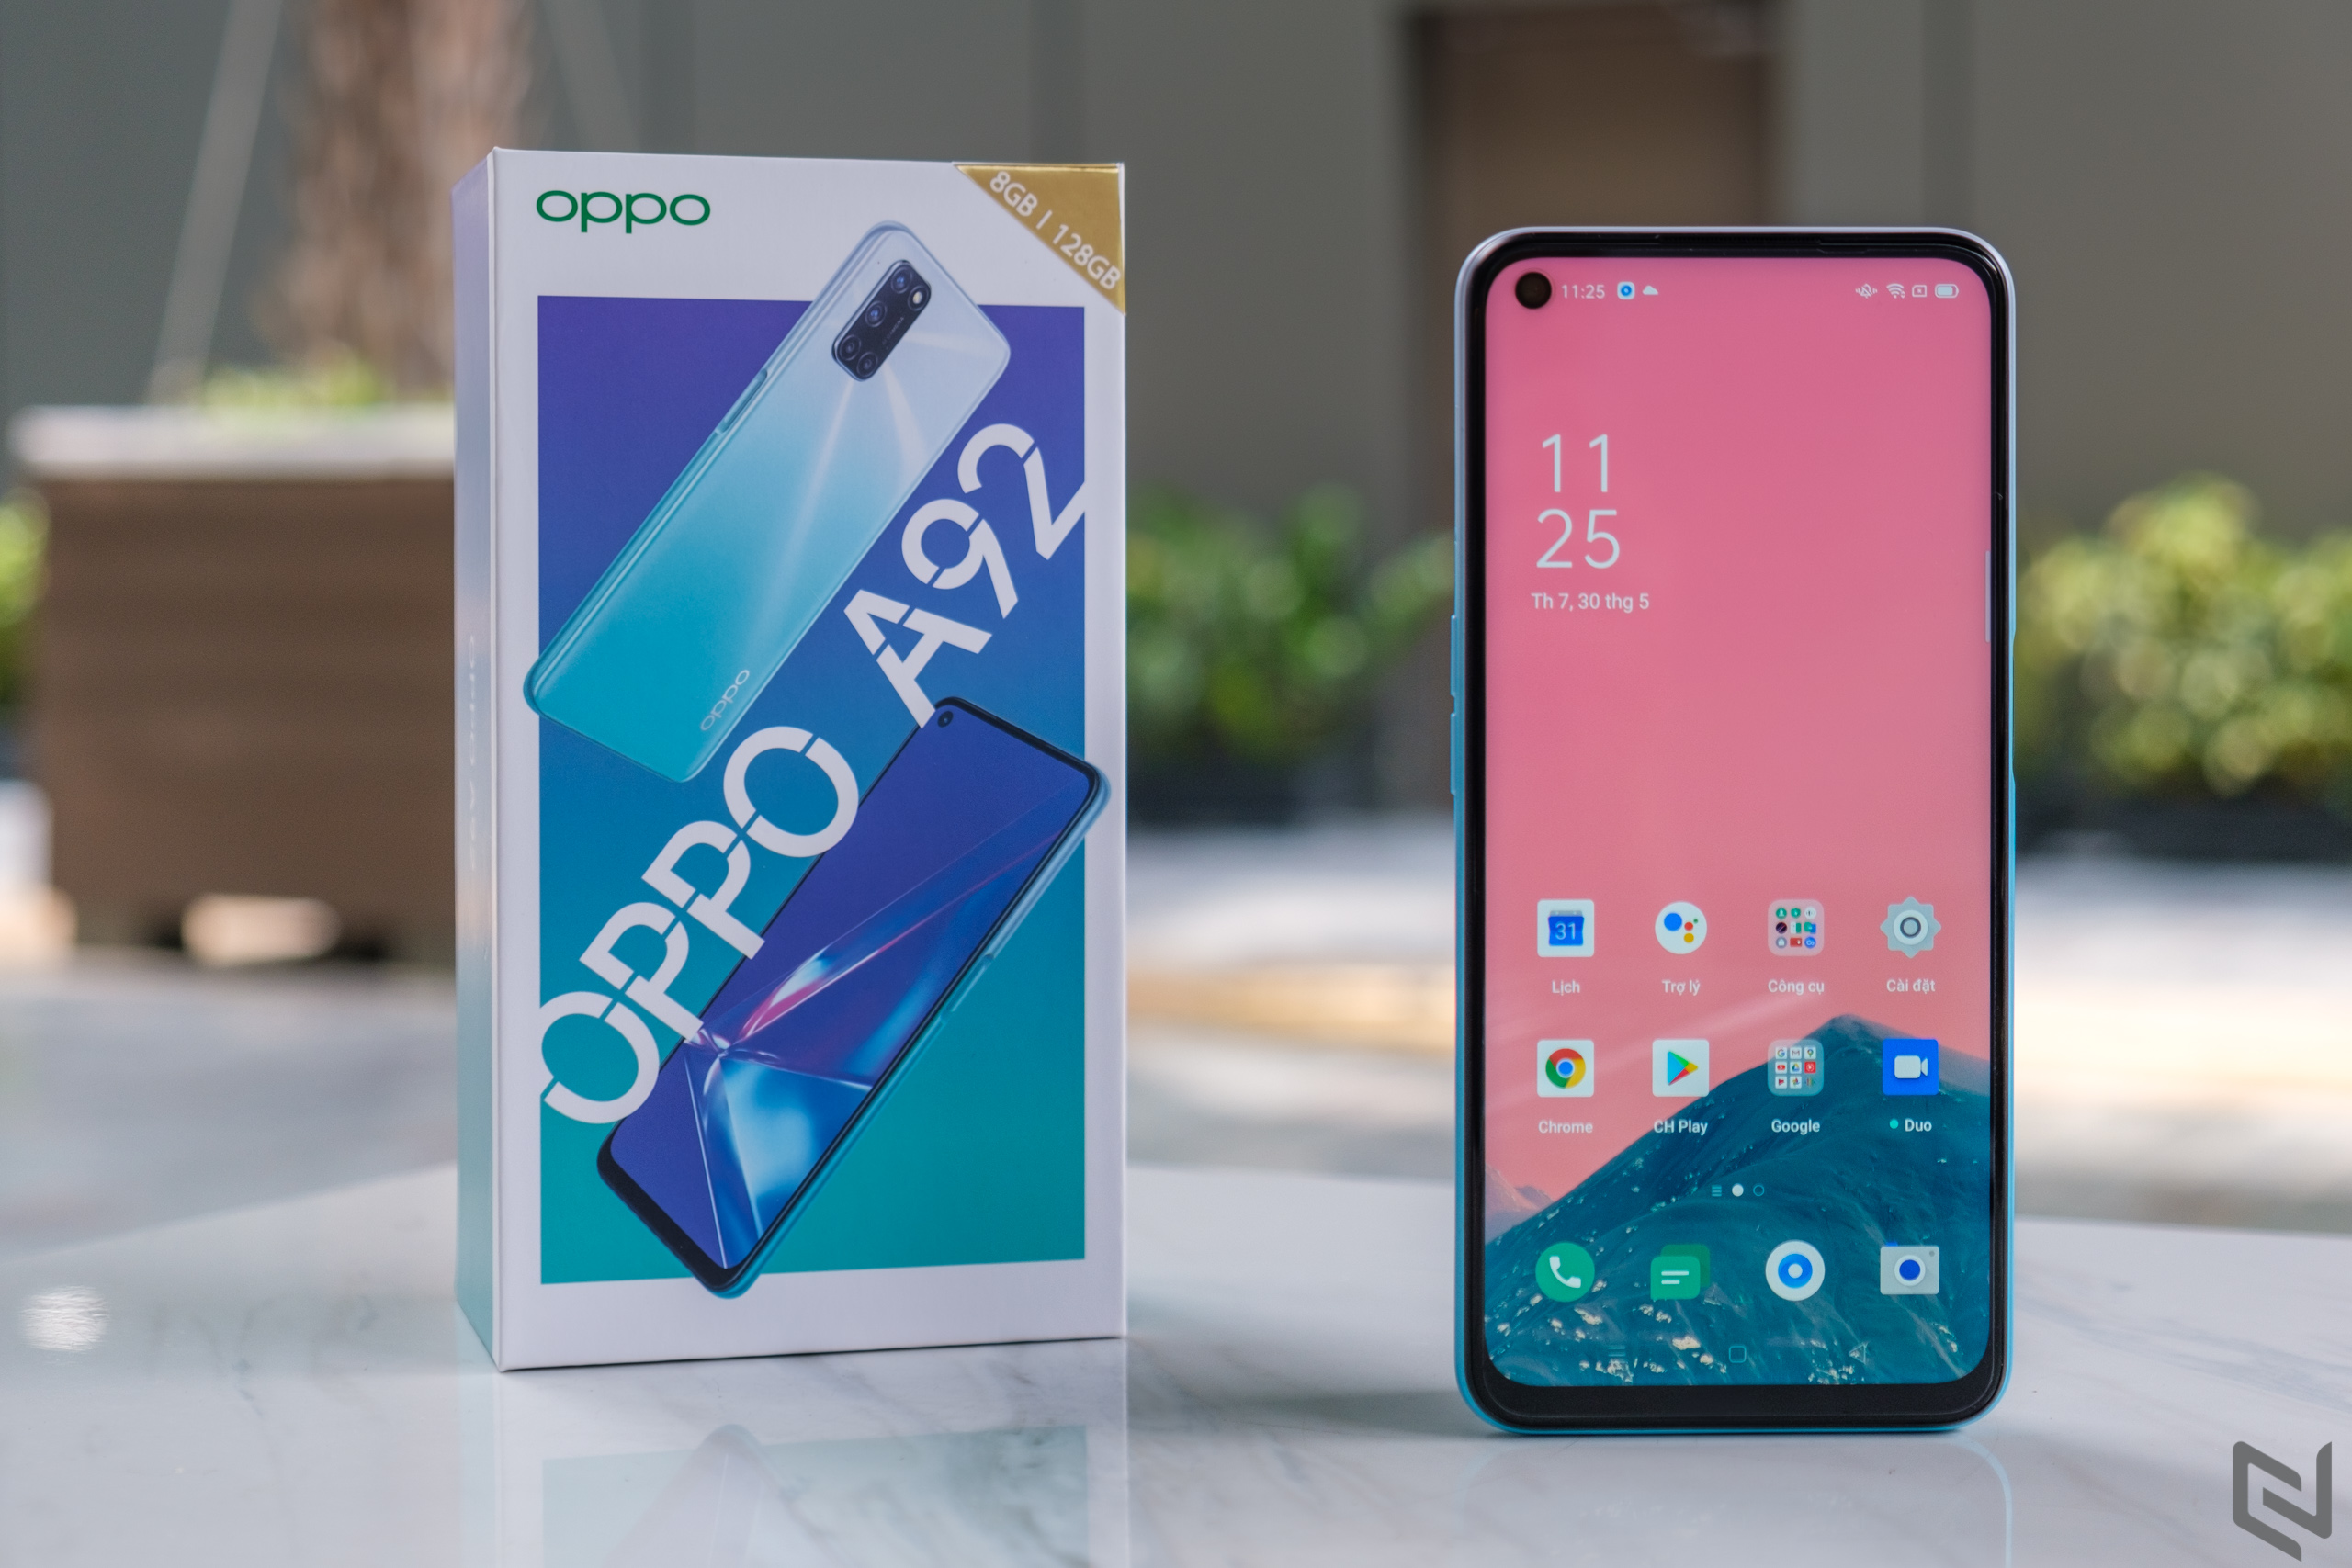 Tuần này có gì: OPPO A92 ra mắt, vivo X50 ra mắt và doanh số bán smartphone, camera giảm mạnh trong Q1/2020